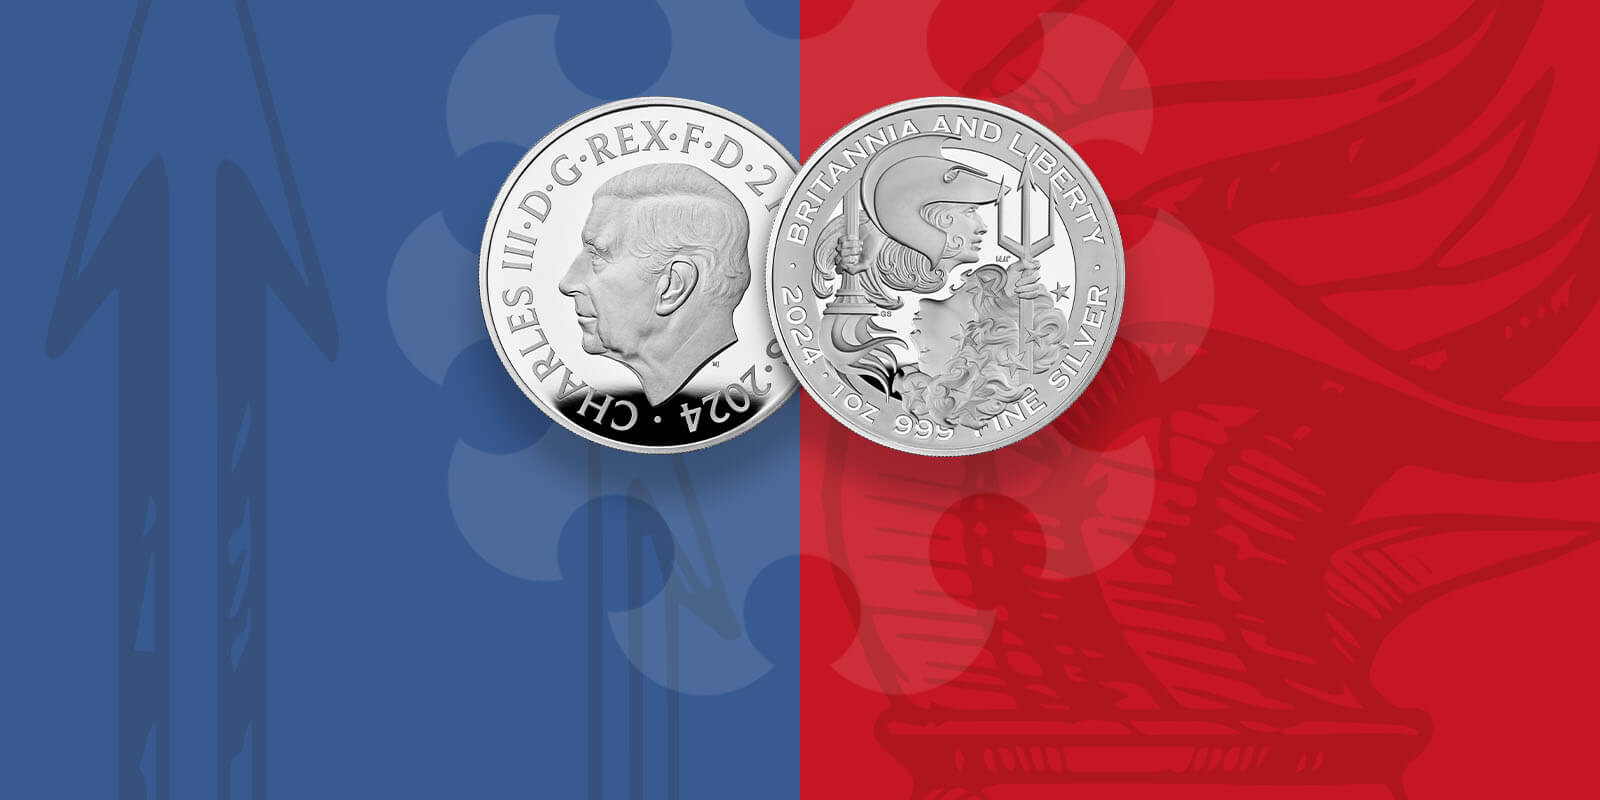 Britannia and Liberty Commemorative Coin Range 